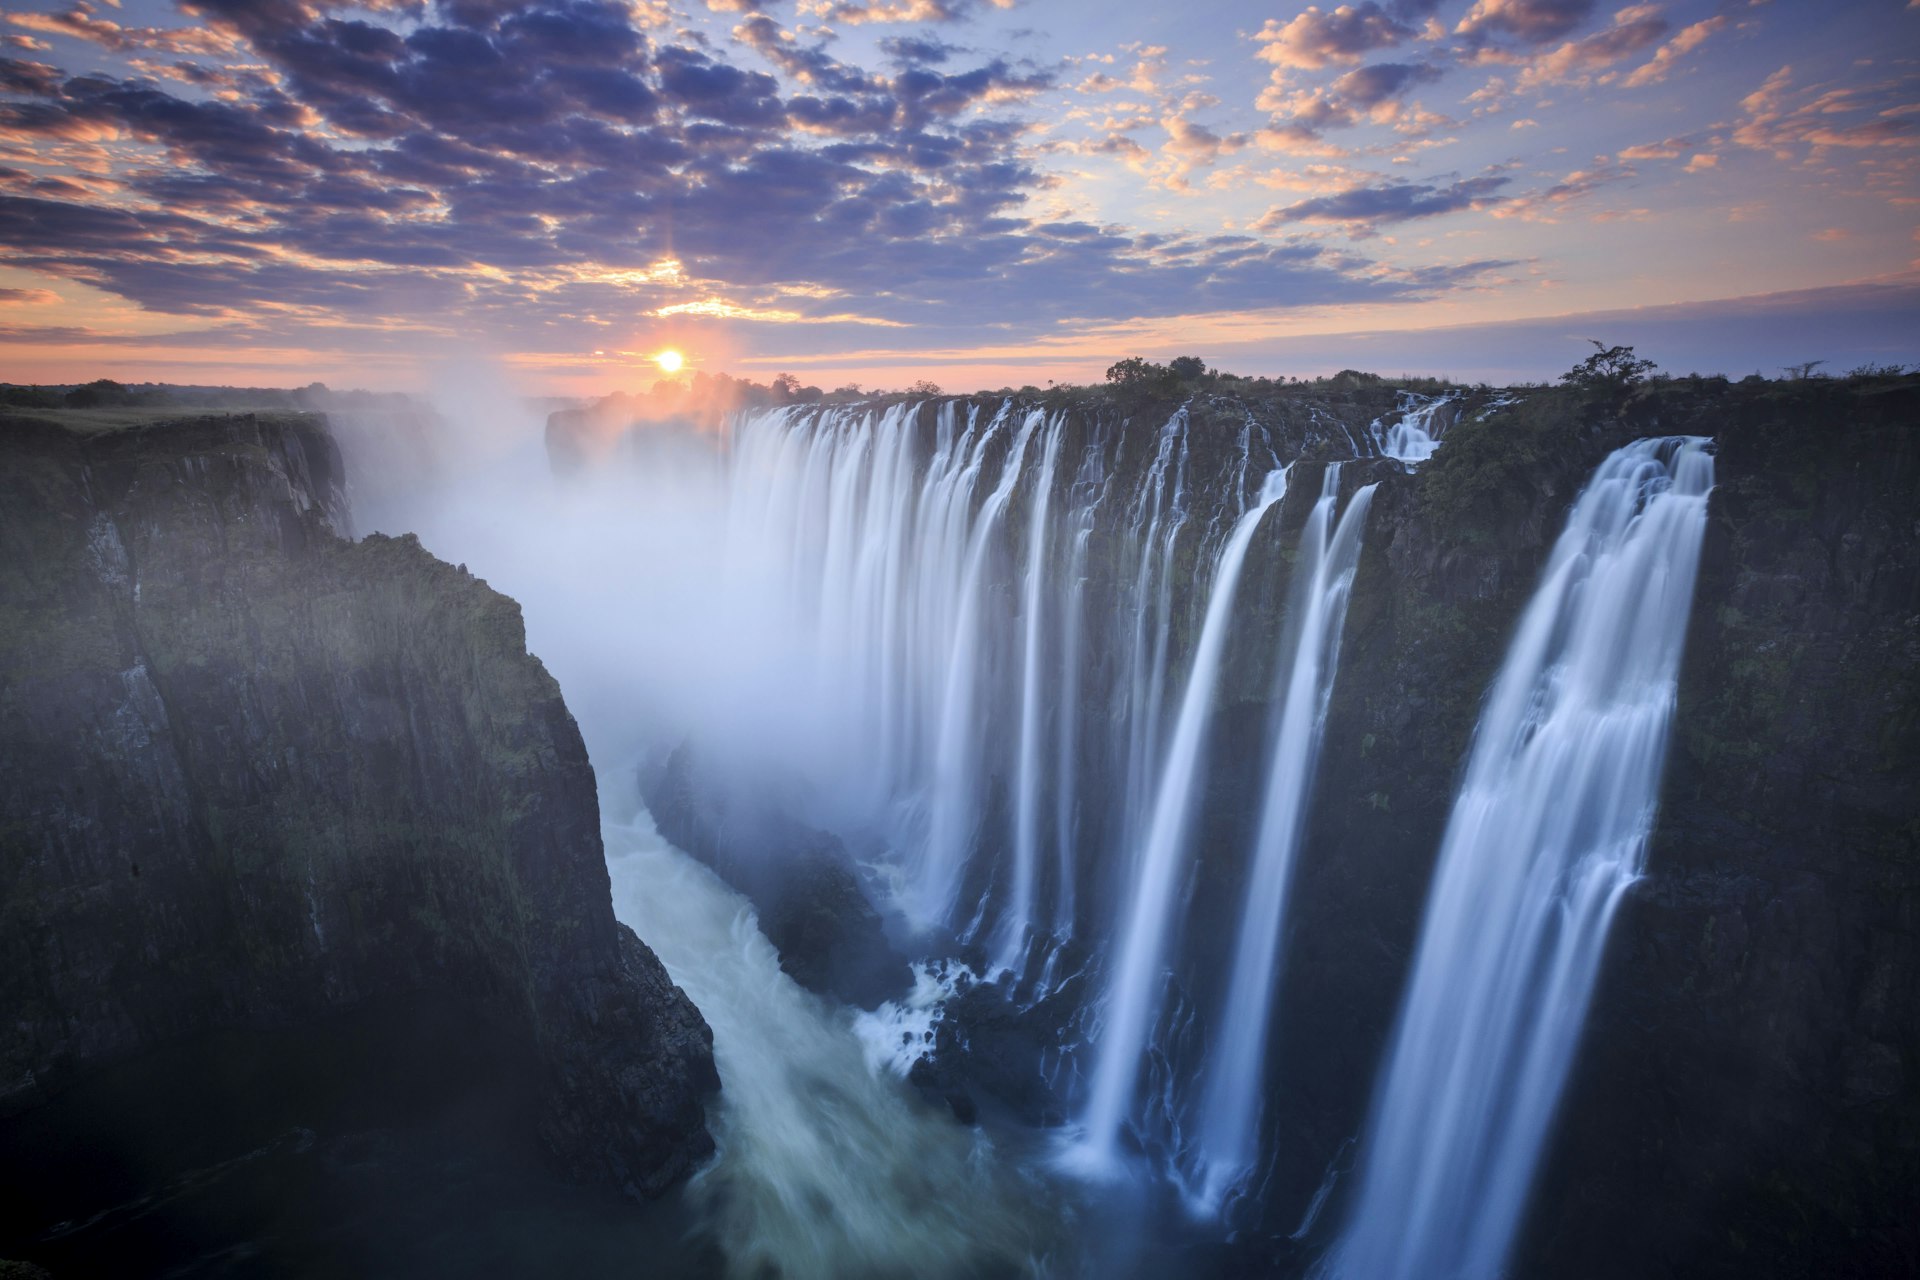 500px Photo ID: 159420727 - Victoria Falls at sunset, Zambia